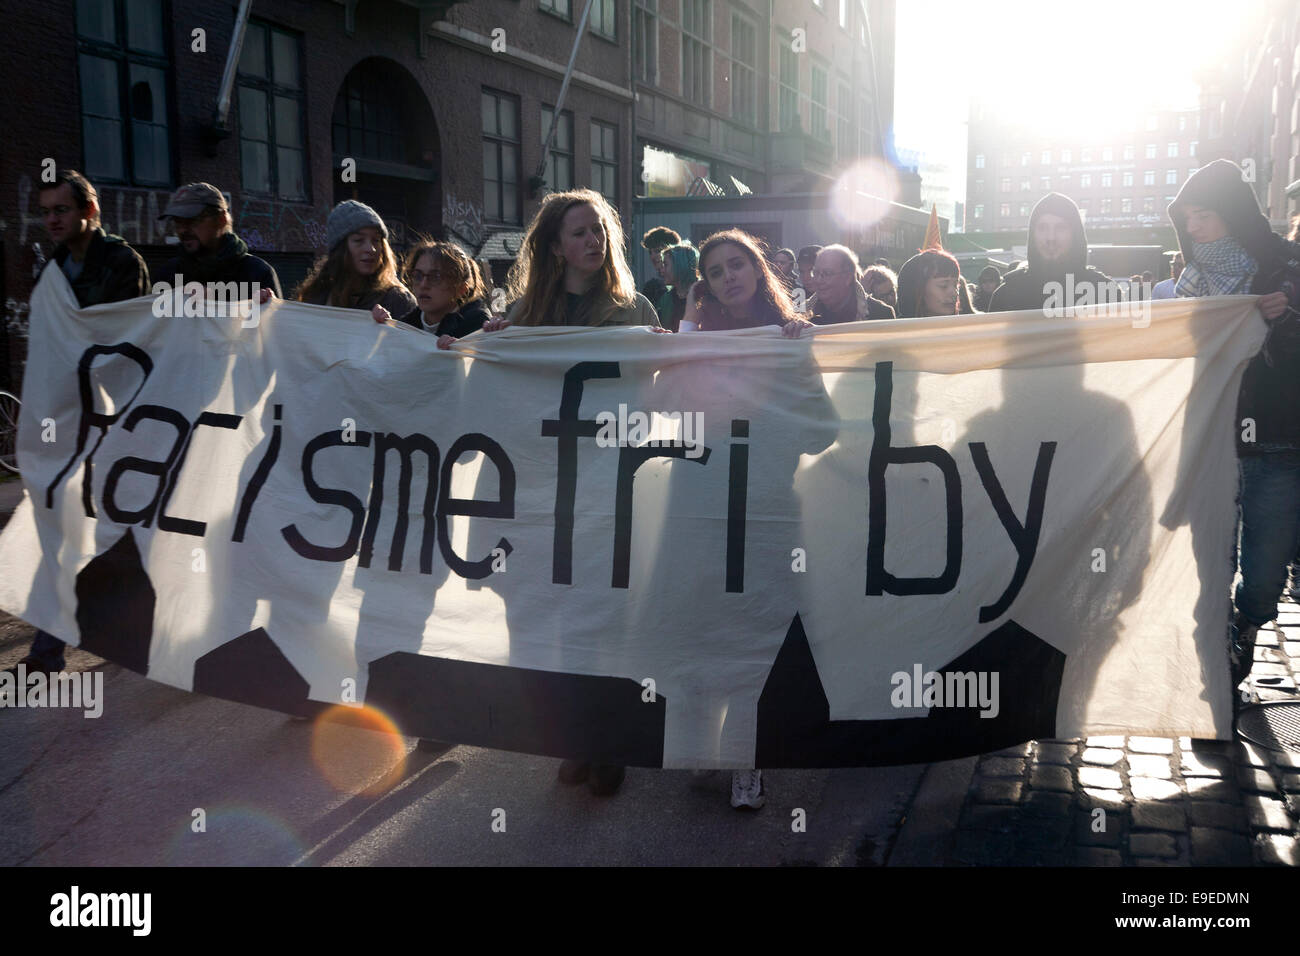 Kopenhagen, Dänemark. 26. Oktober 2014: Demonstration in Kopenhagen gegen Rassismus. Die Zeichen in englischer Sprache zu lesen: auf dem Schild steht in englischer Sprache: "Rassismus Freistadt" Credit: OJPHOTOS/Alamy Live News Stockfoto